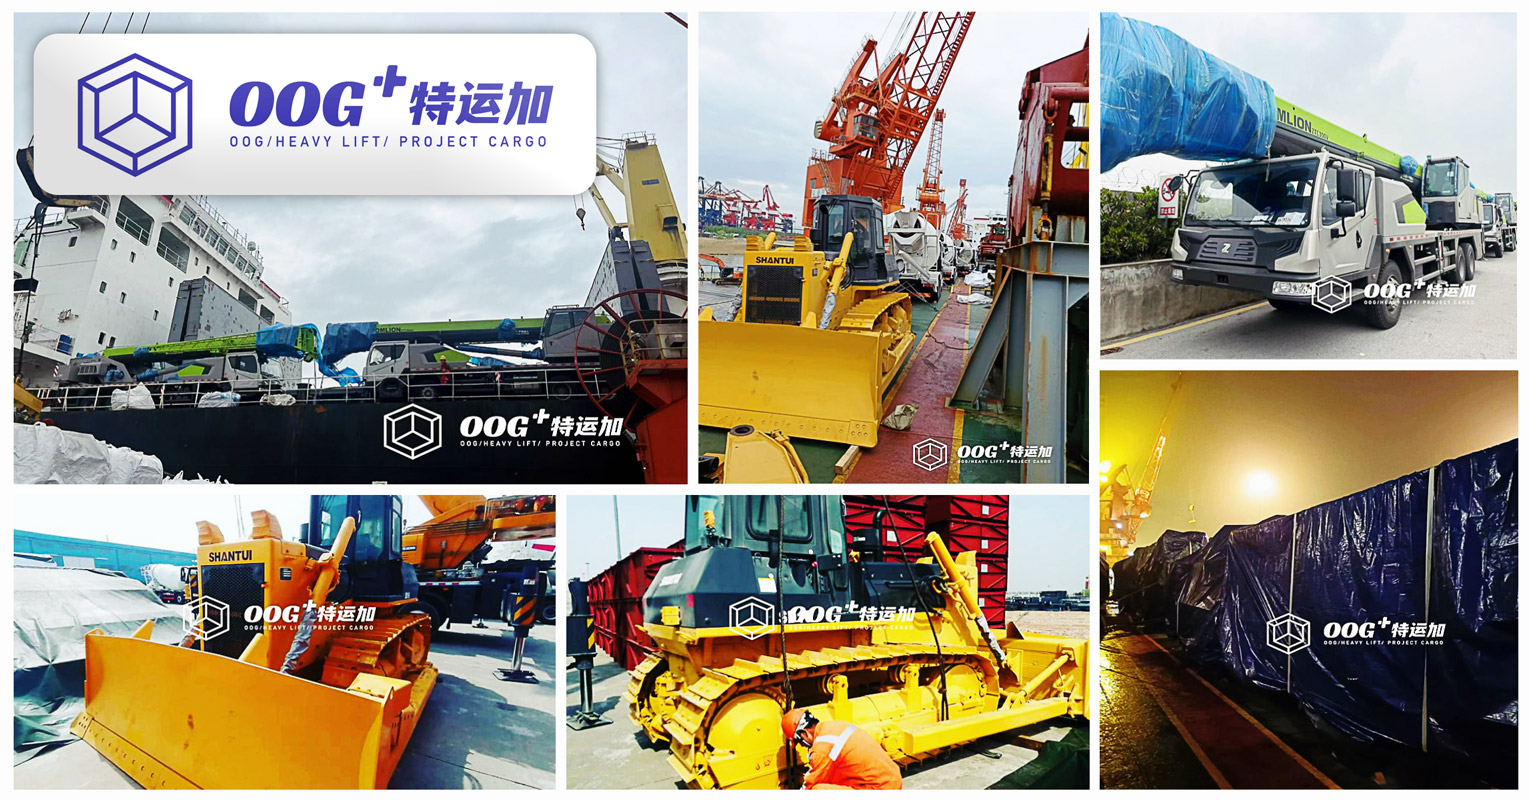 OOG Plus Shipped 4 x Truck Cranes & 1 x Shantui Dozer from Zhangjiagang to Constantza by Breakbulk